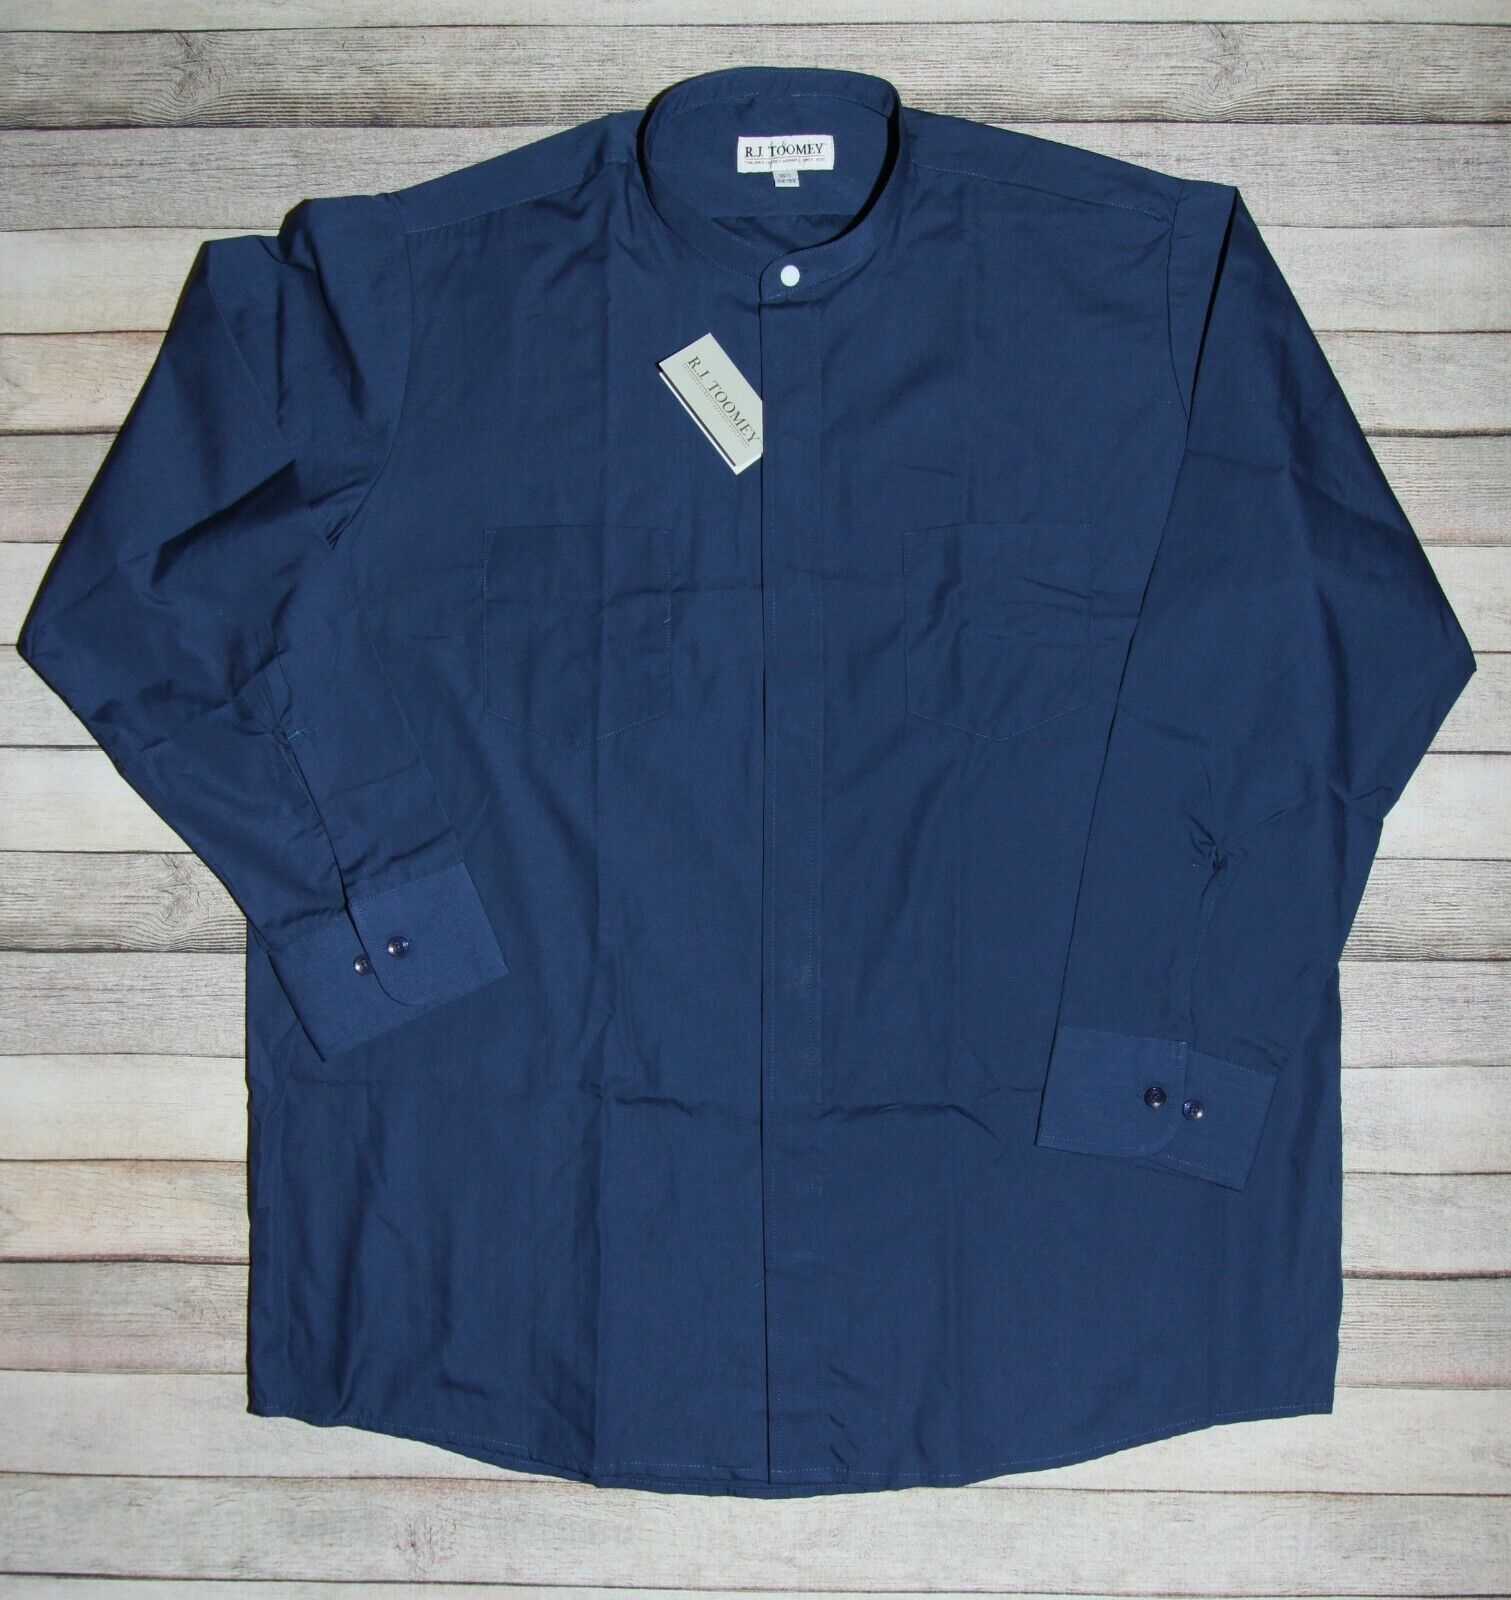 R.j. Toomey Navy Blue Neckband Clergy Long Sleeve Shirt Size 16.5 32-33